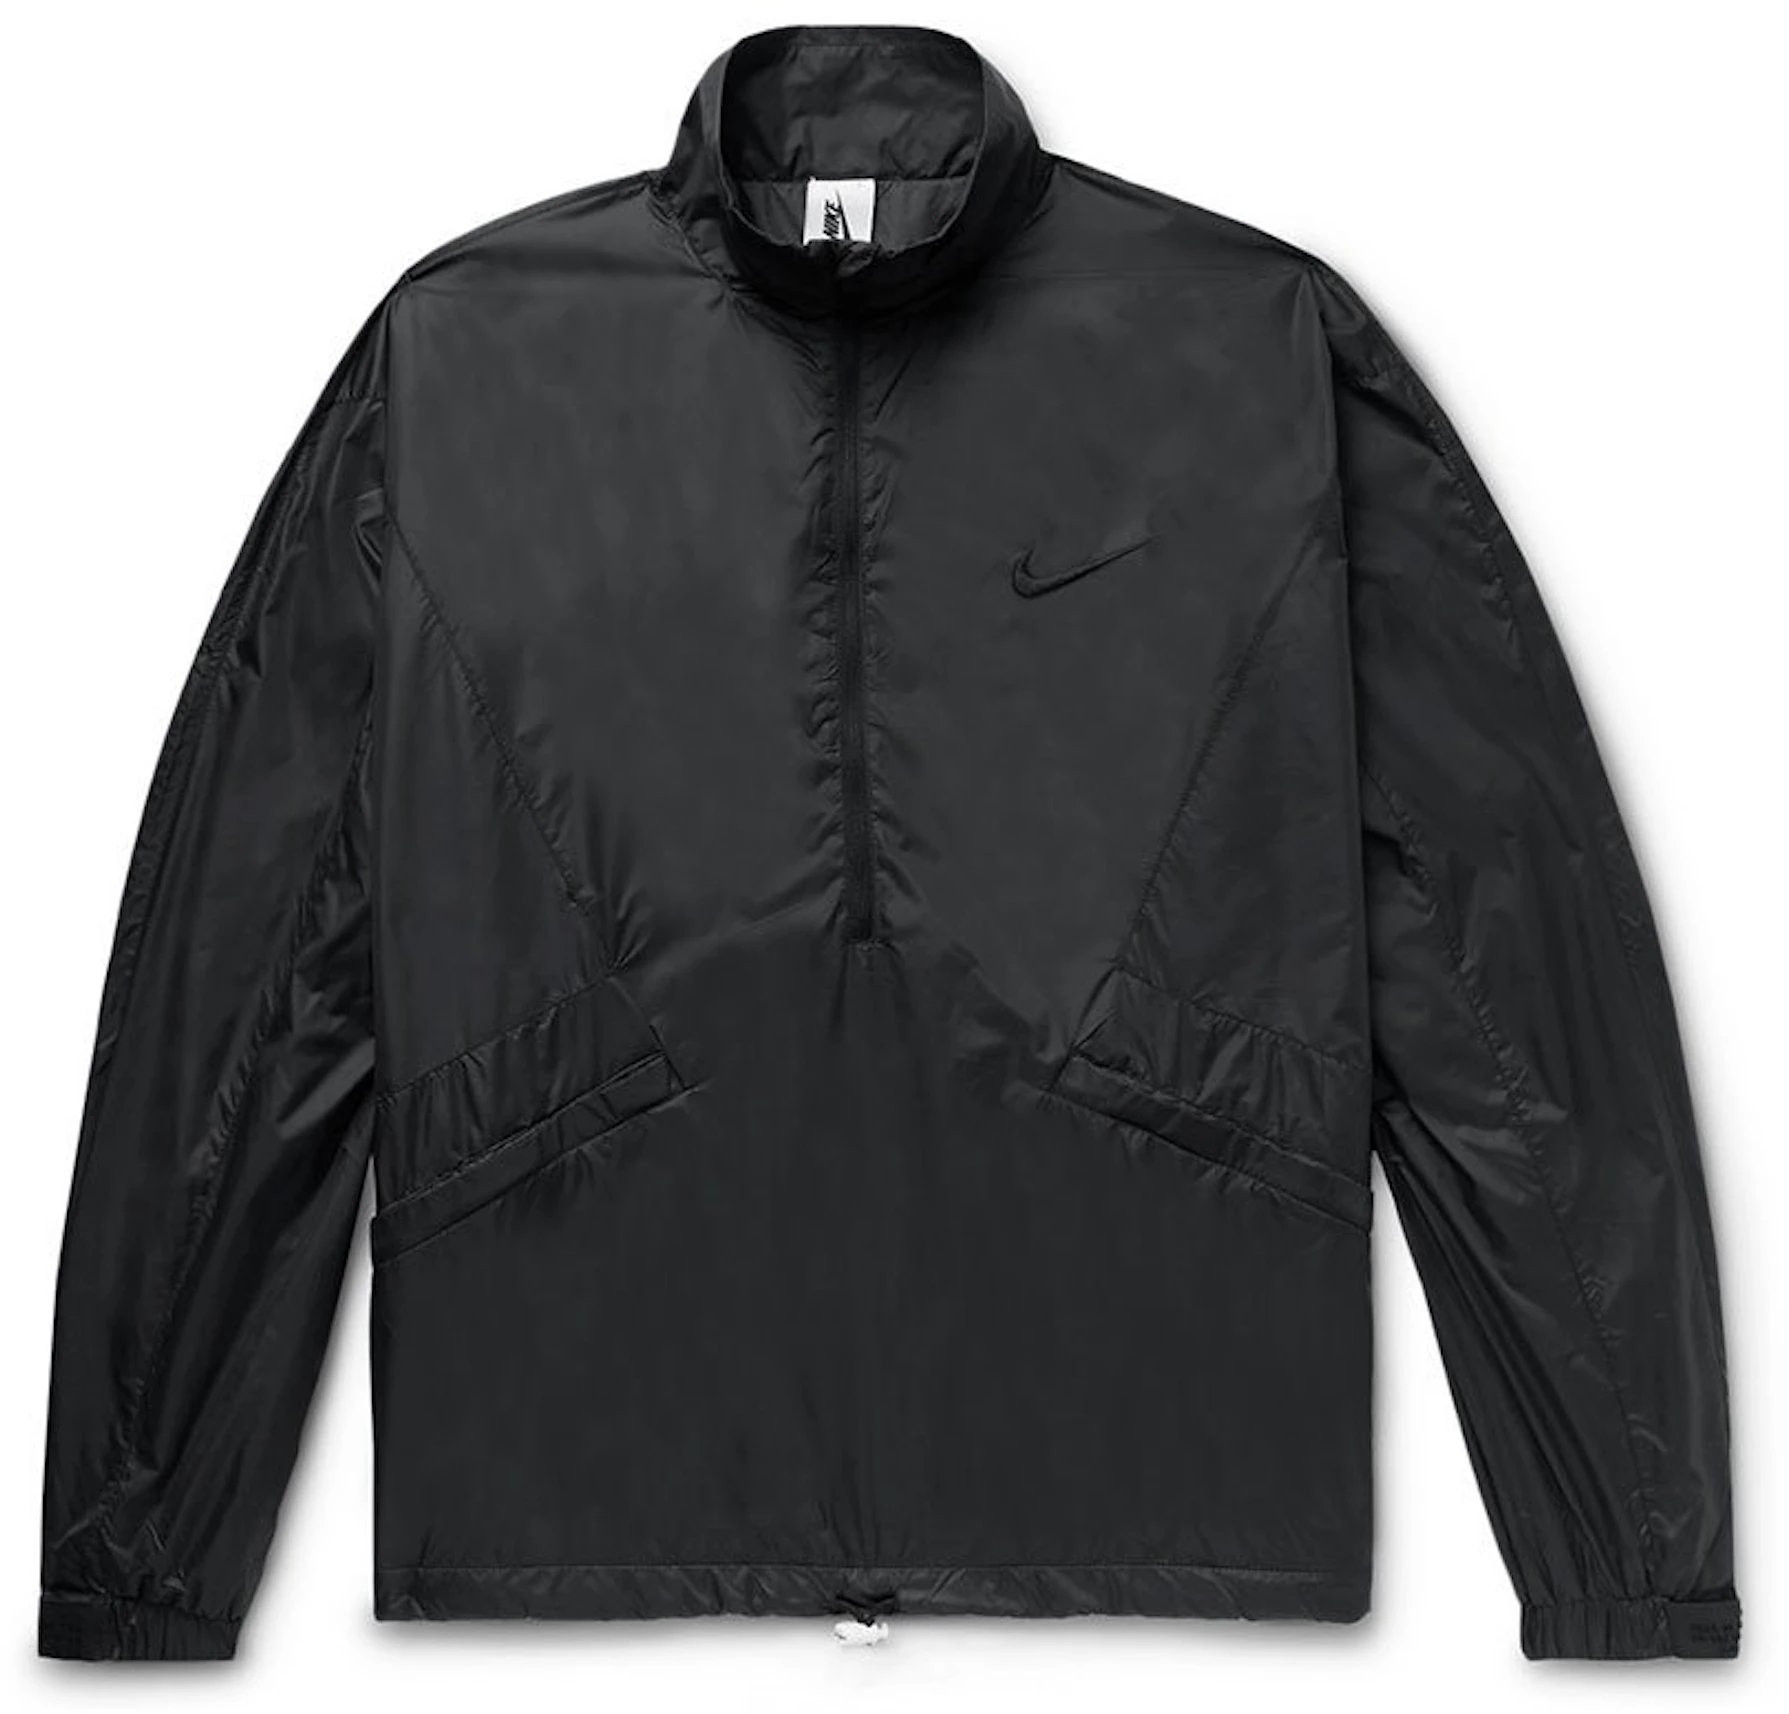 antártico Generalmente hablando vagón FEAR OF GOD x Nike Long Sleeve Half Zip Jacket Black - FW18 - ES